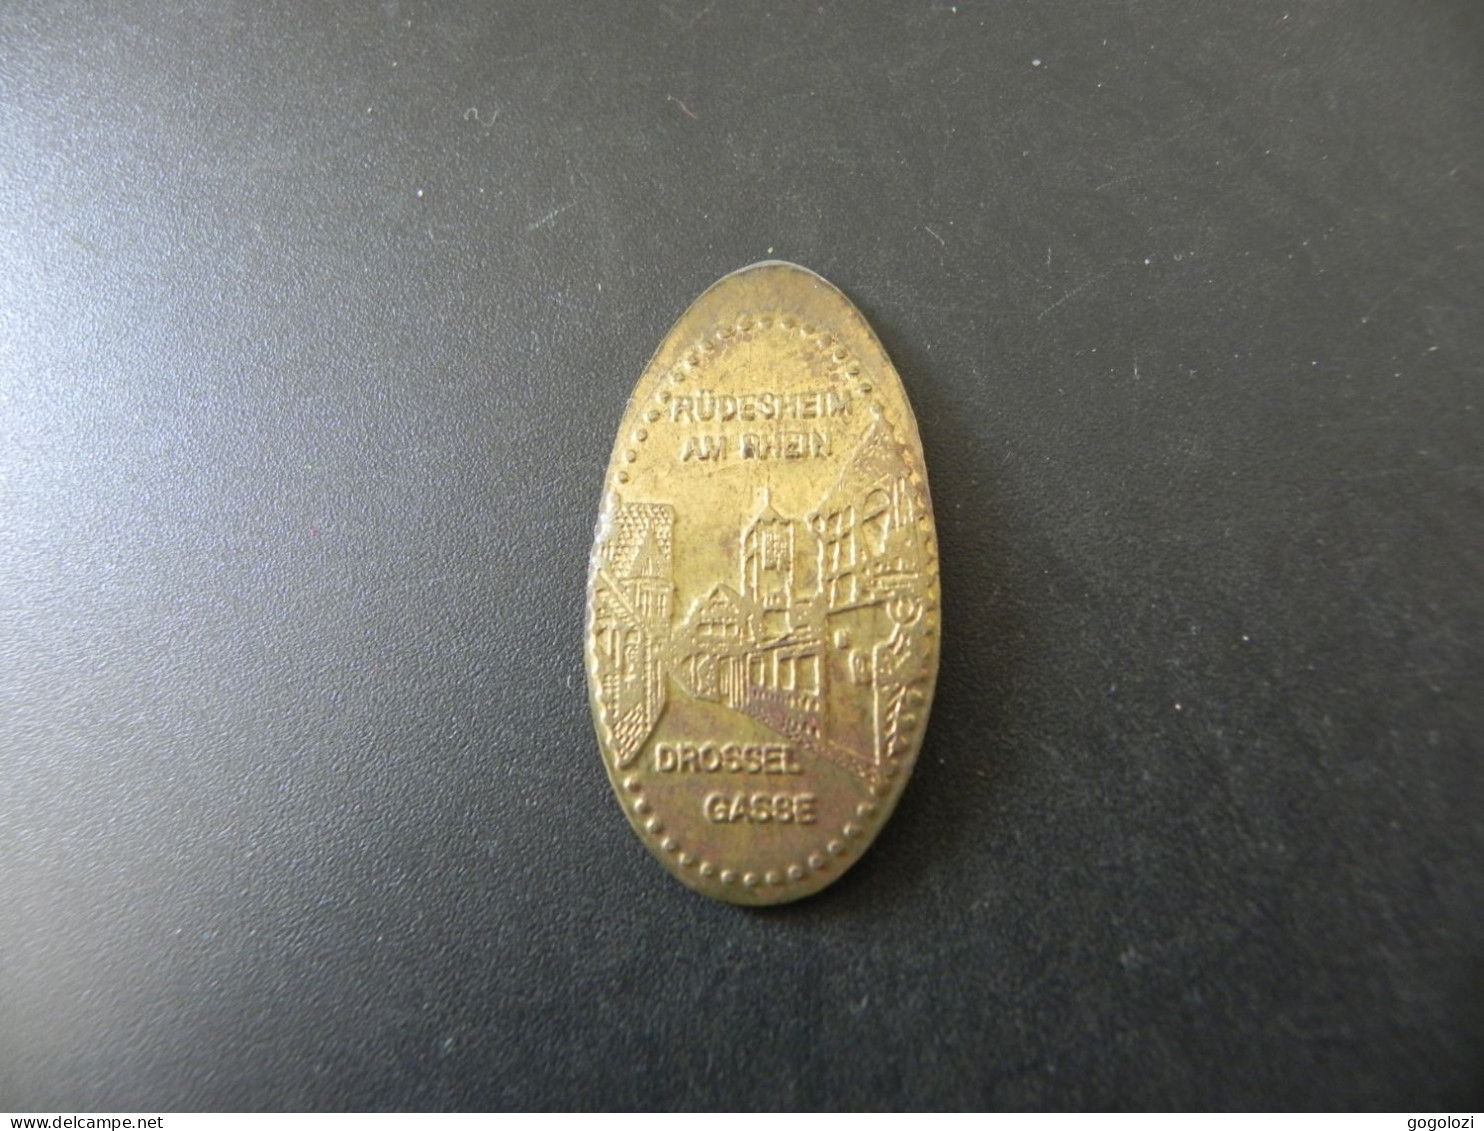 Jeton Token - Deutschland - Germany - Elongated 5 Pfennig Coin - Rüdesheim Am Rhein - Drossel Gasse - Monete Allungate (penny Souvenirs)